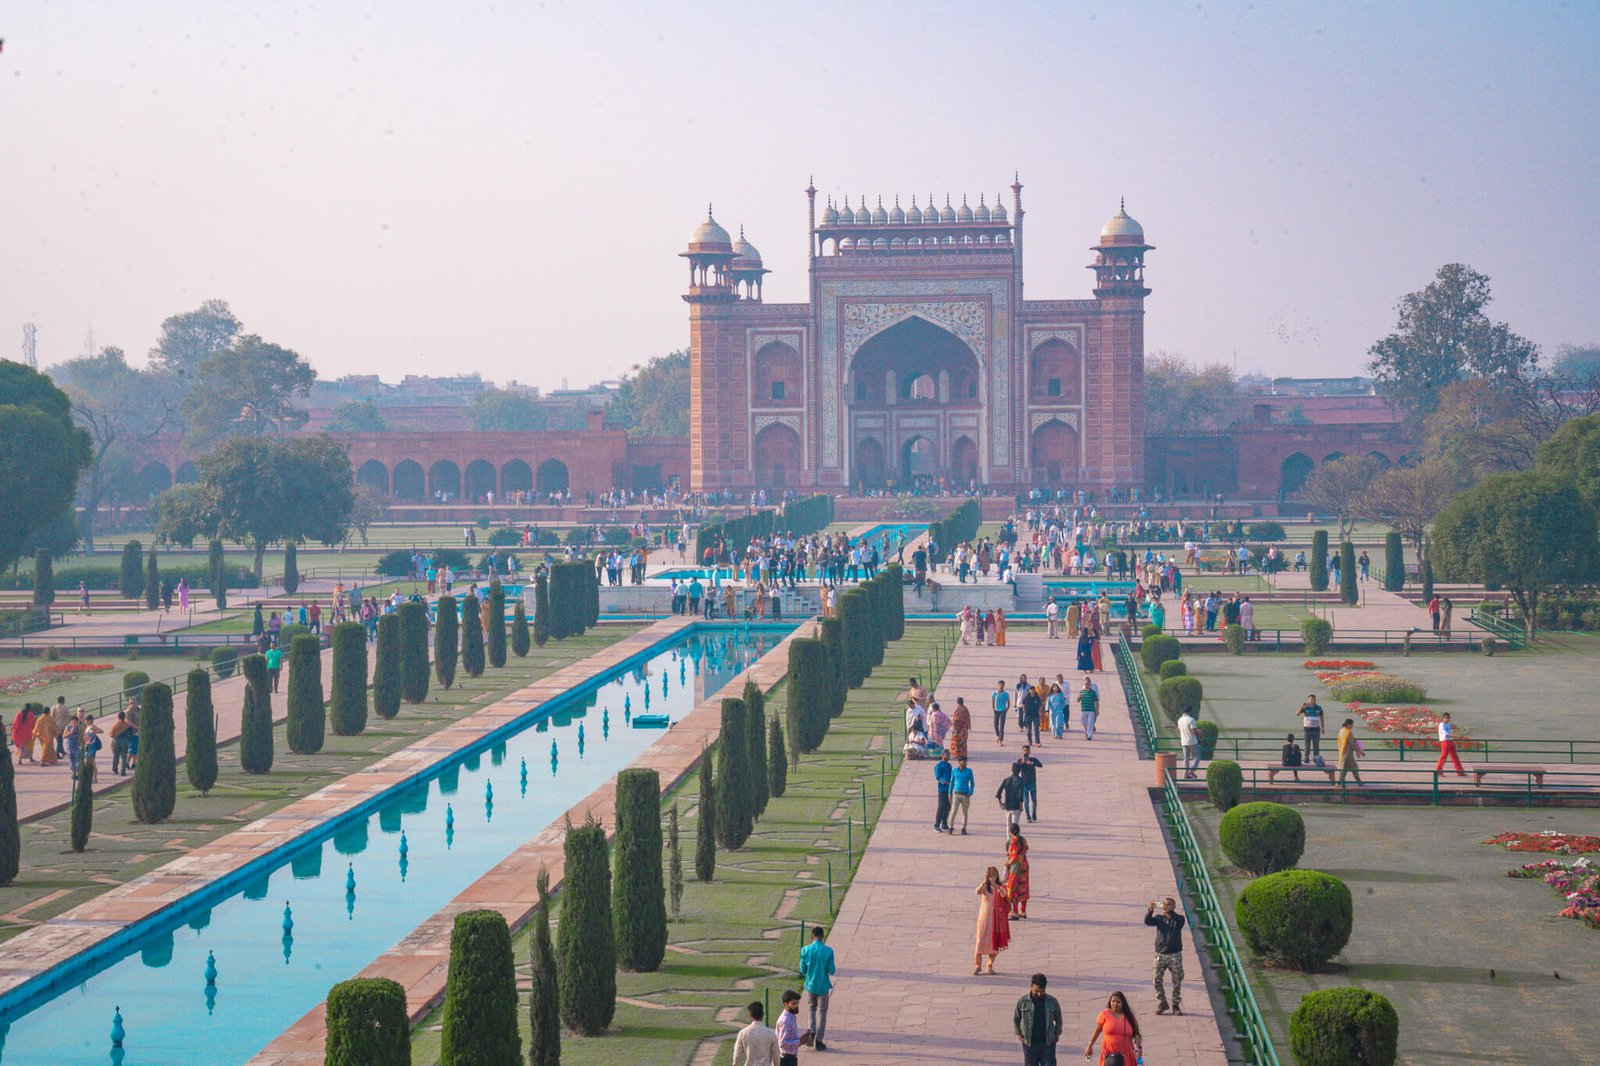 crowds visiting the Taj Mahal in India